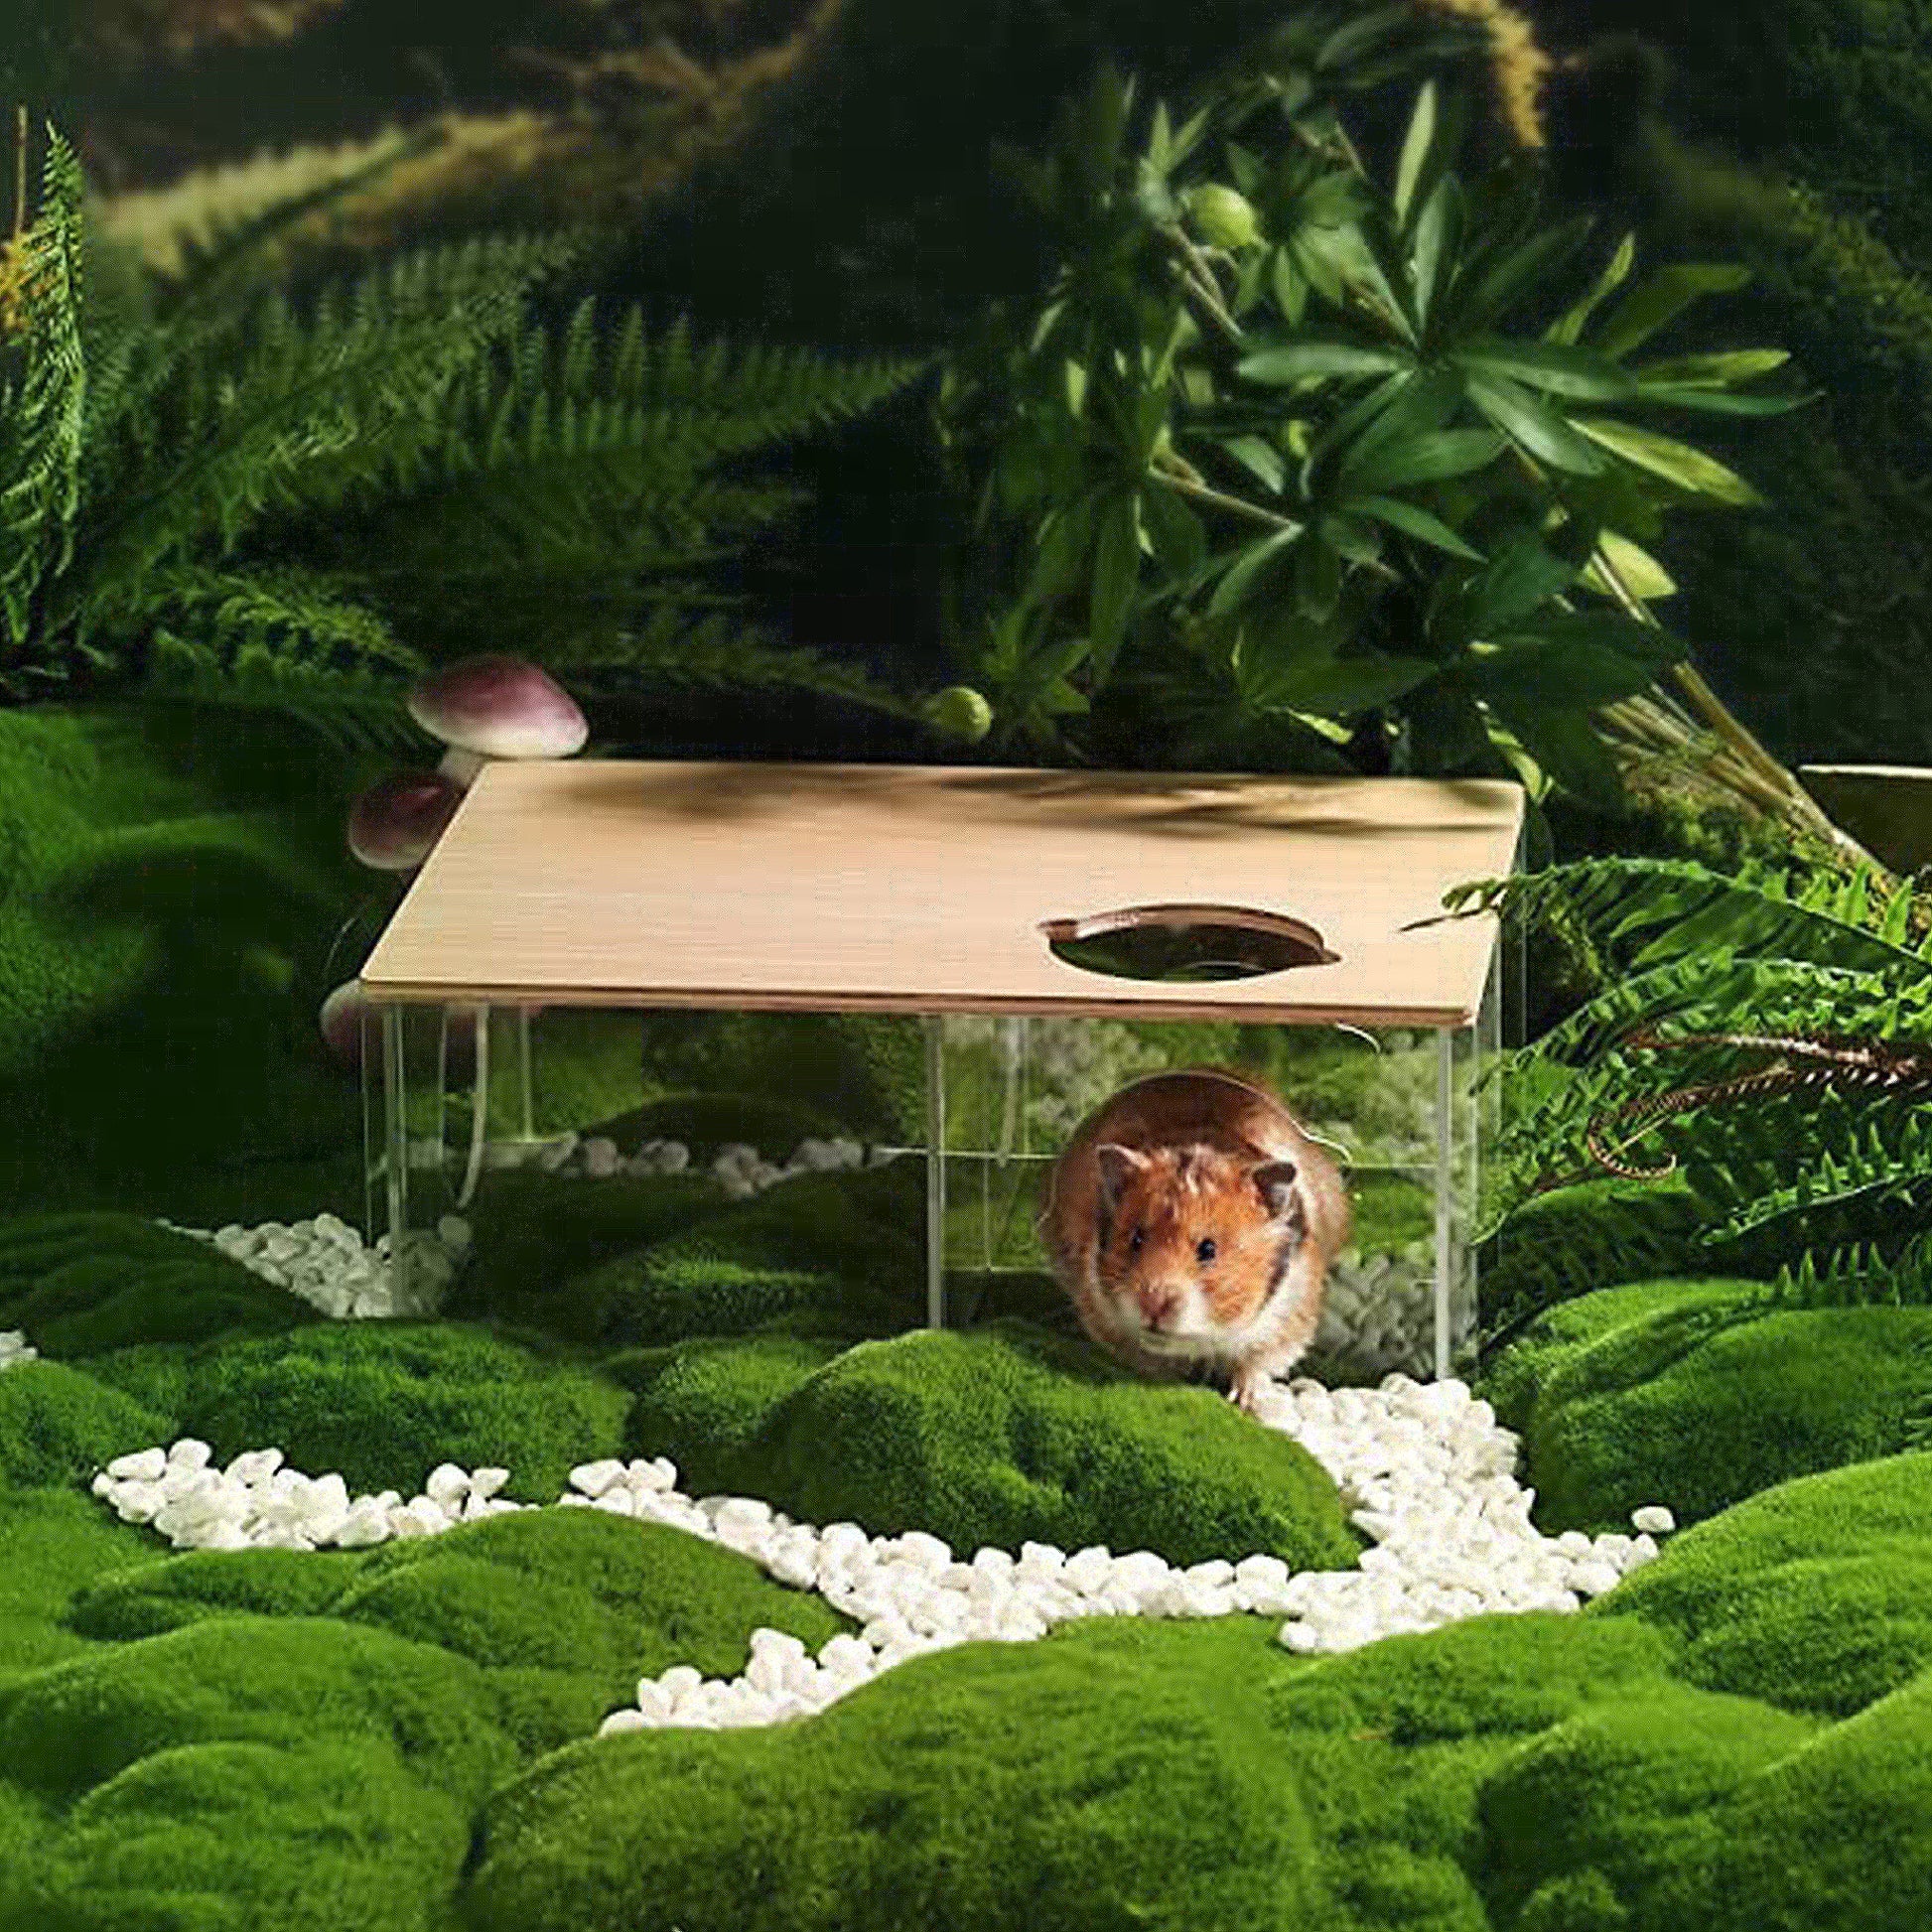 BUCATSTATE Acrylic Hamster Hideout 3-Chamber